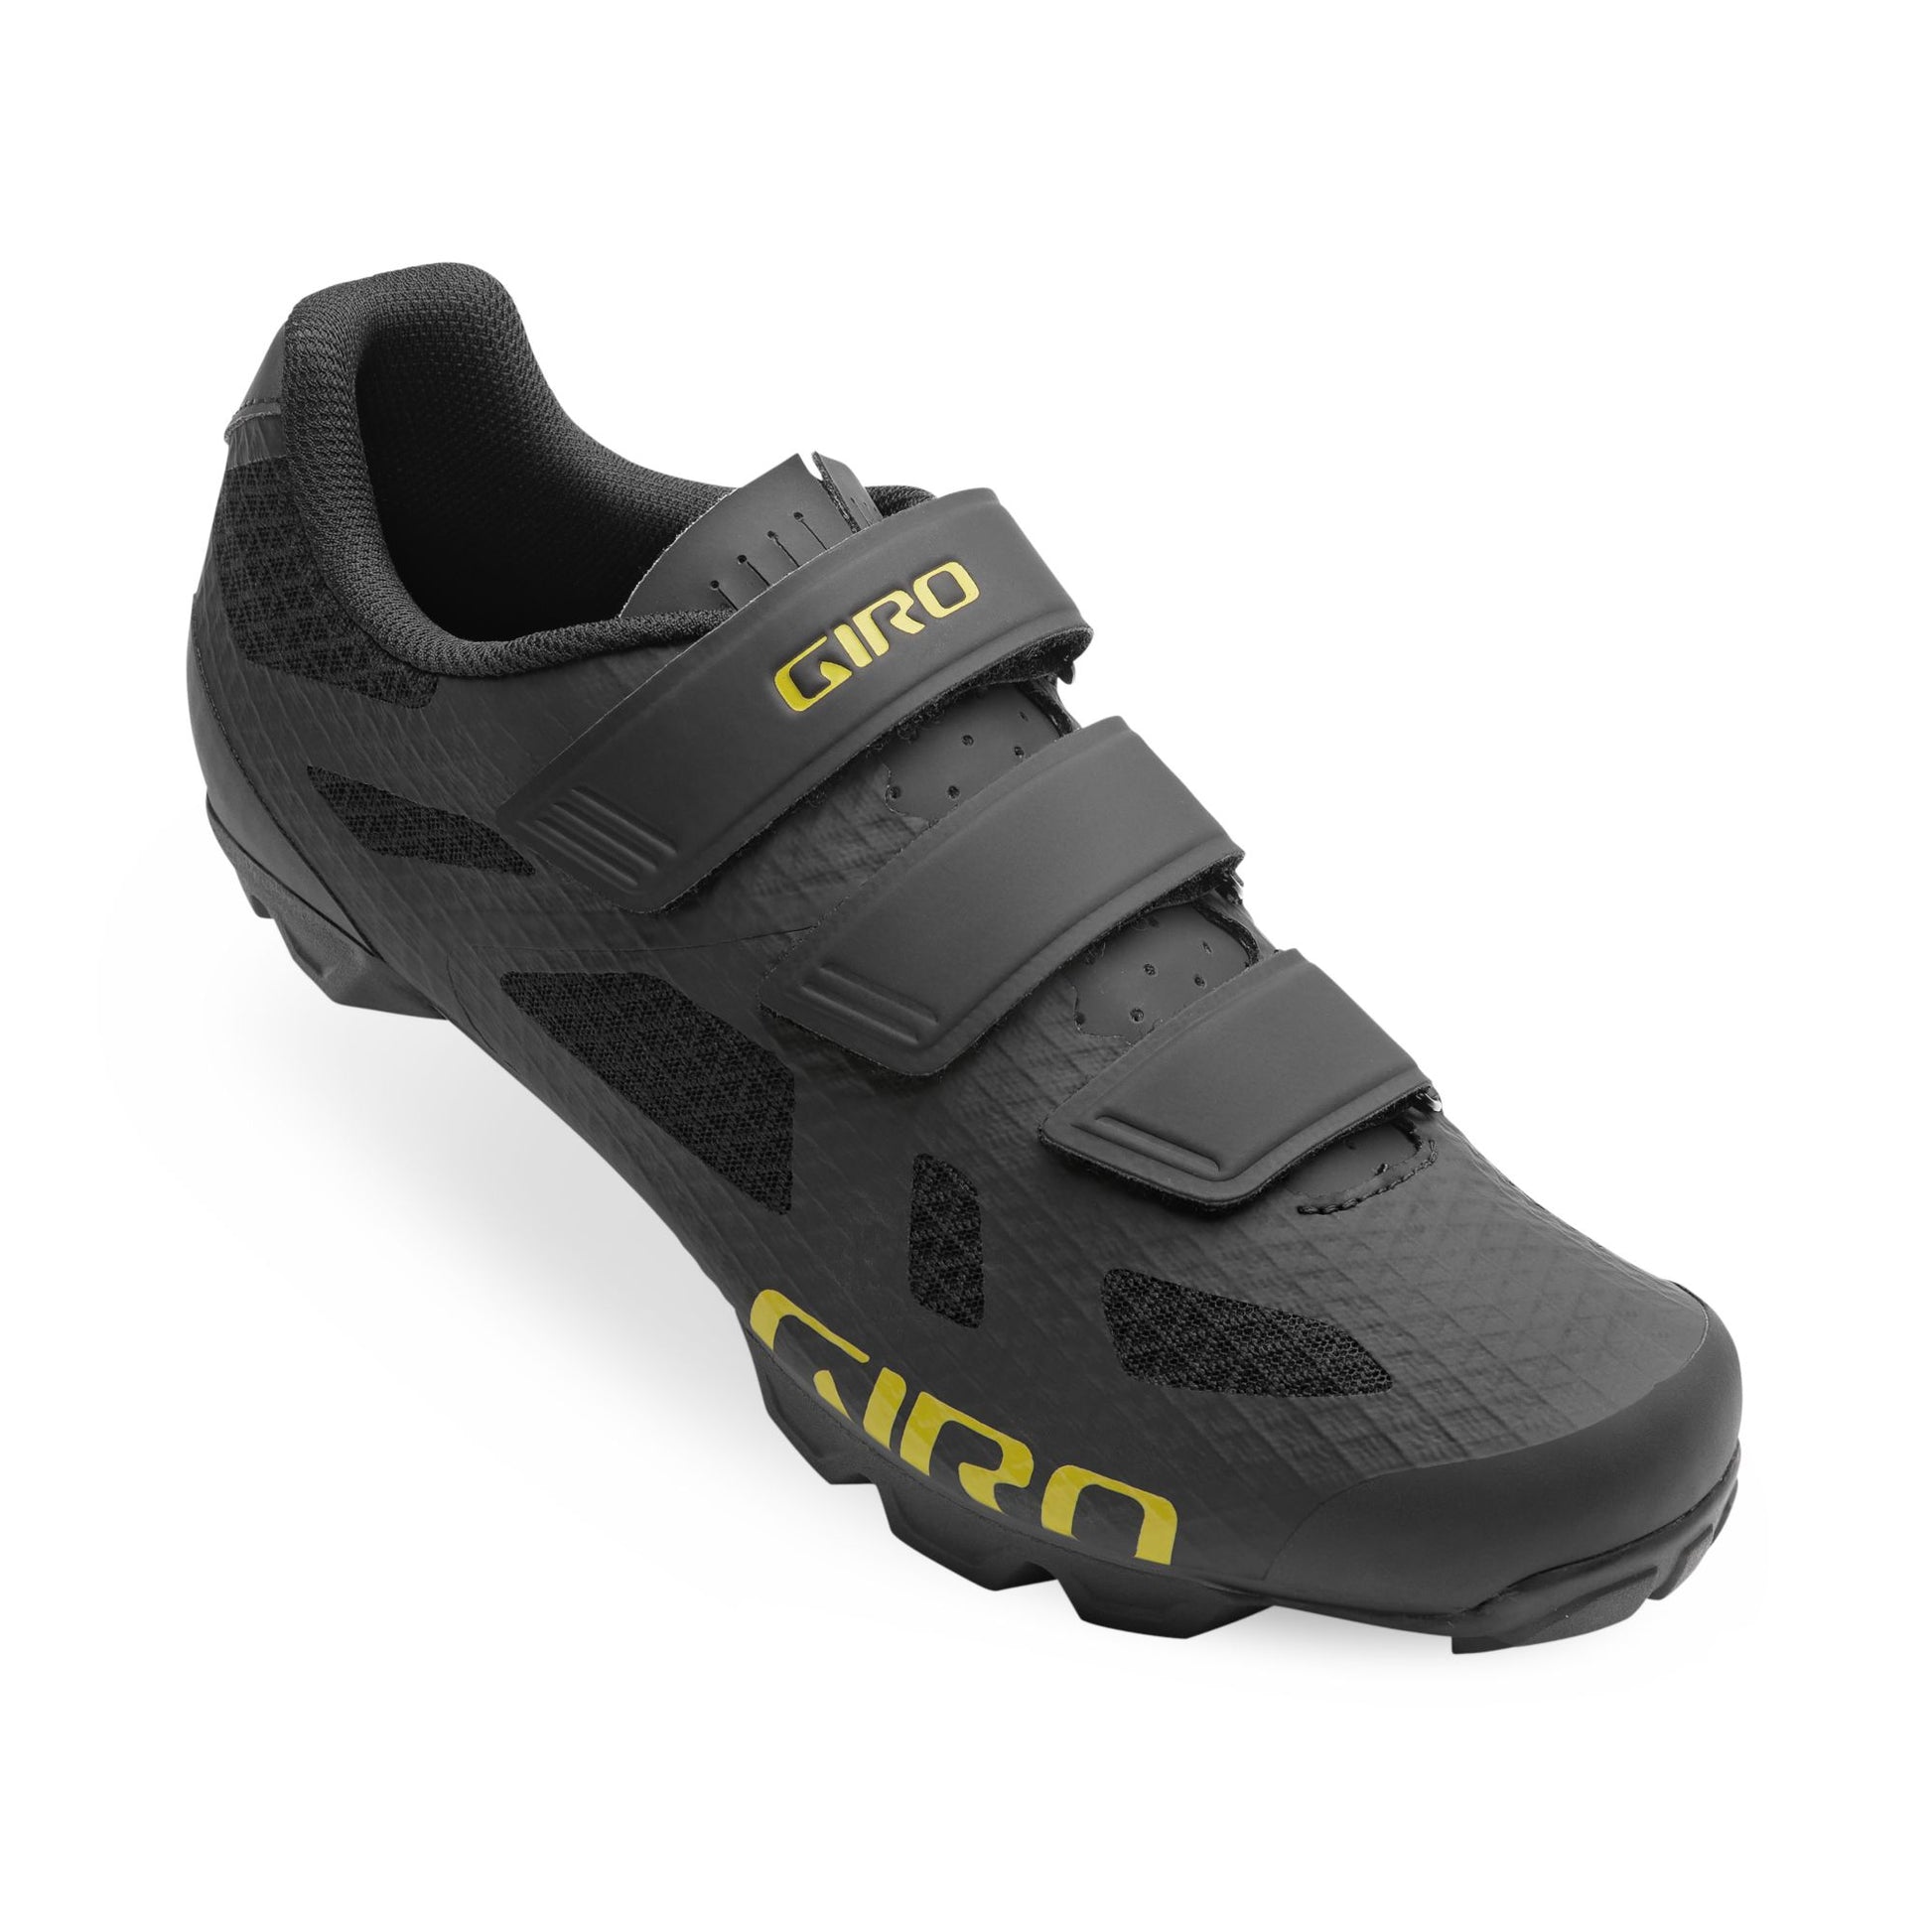 Giro Men's Ranger Shoe Black/Cascade Green Bike Shoes